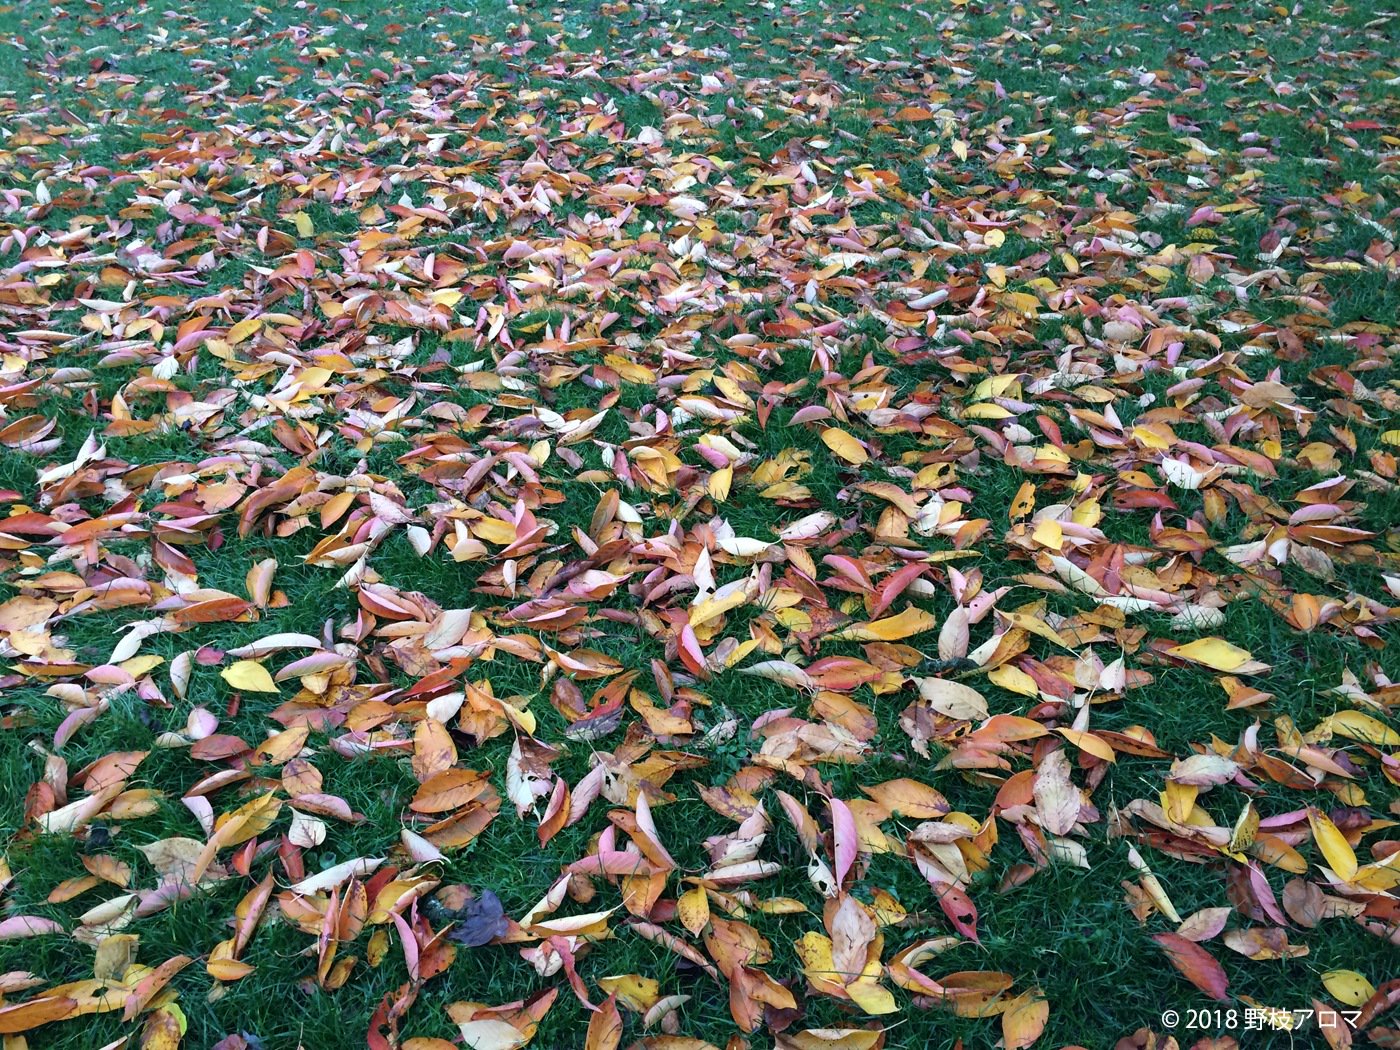 ヴァンセンヌの森の落ち葉たち